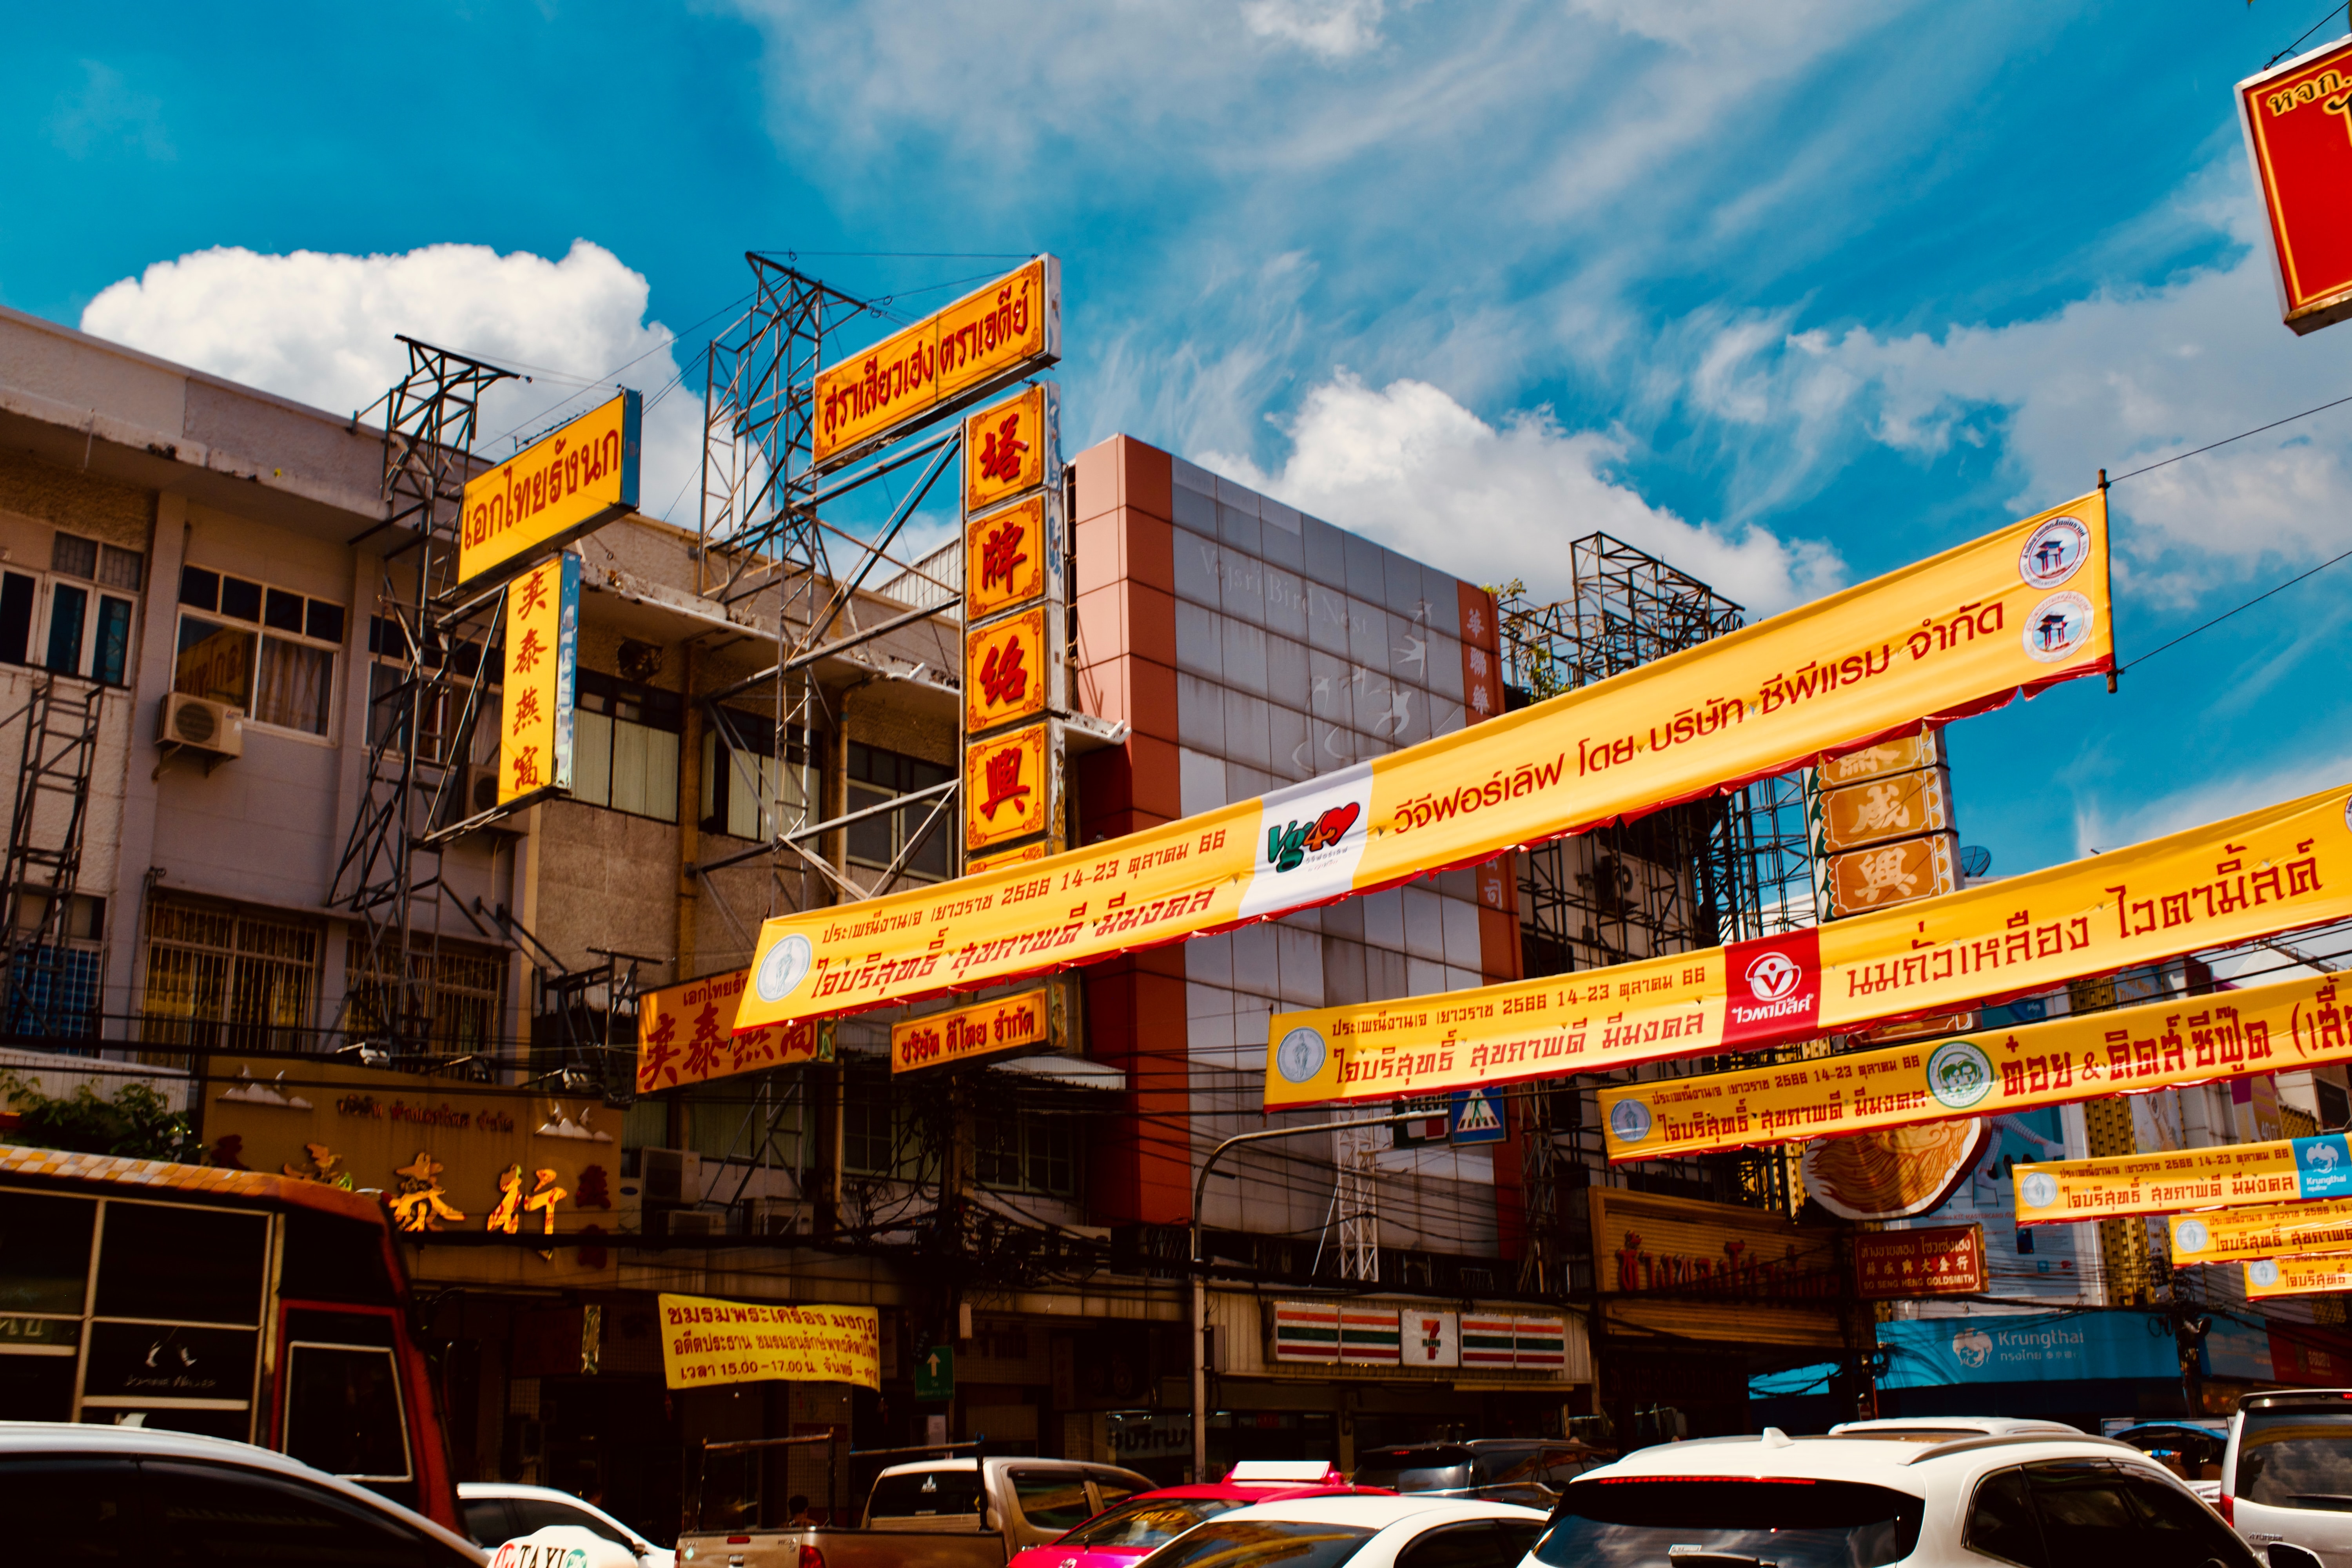 Chinatown Yaowarat Road Bangkok